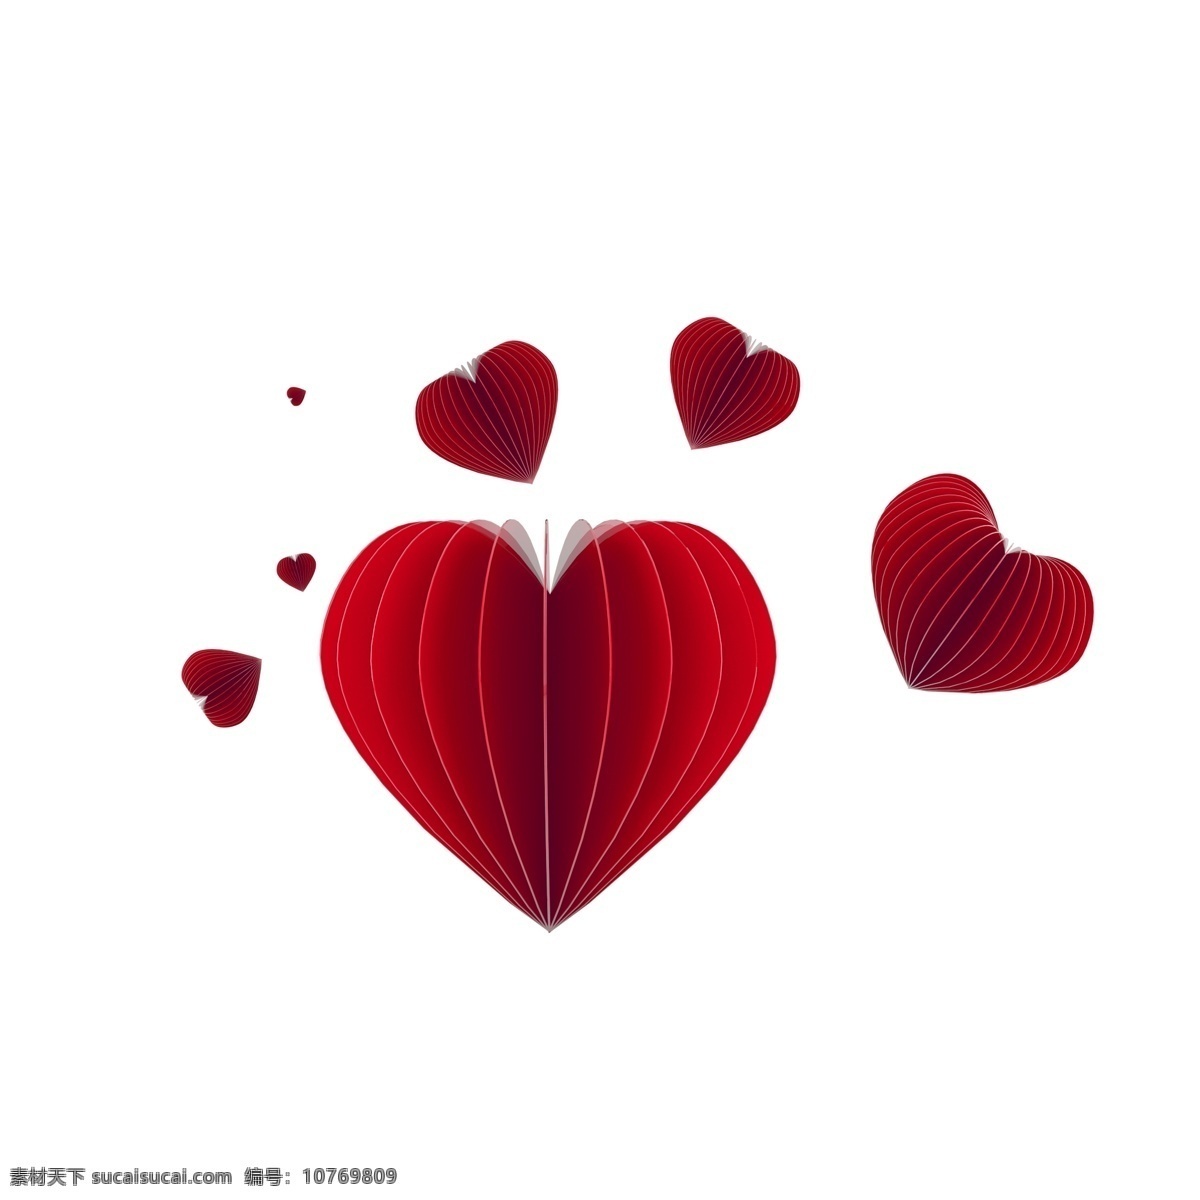 感恩节 立体 装饰 氛围 元素 红色 爱心 折纸 红心 装饰元素 氛围元素 红色的心 折纸效果